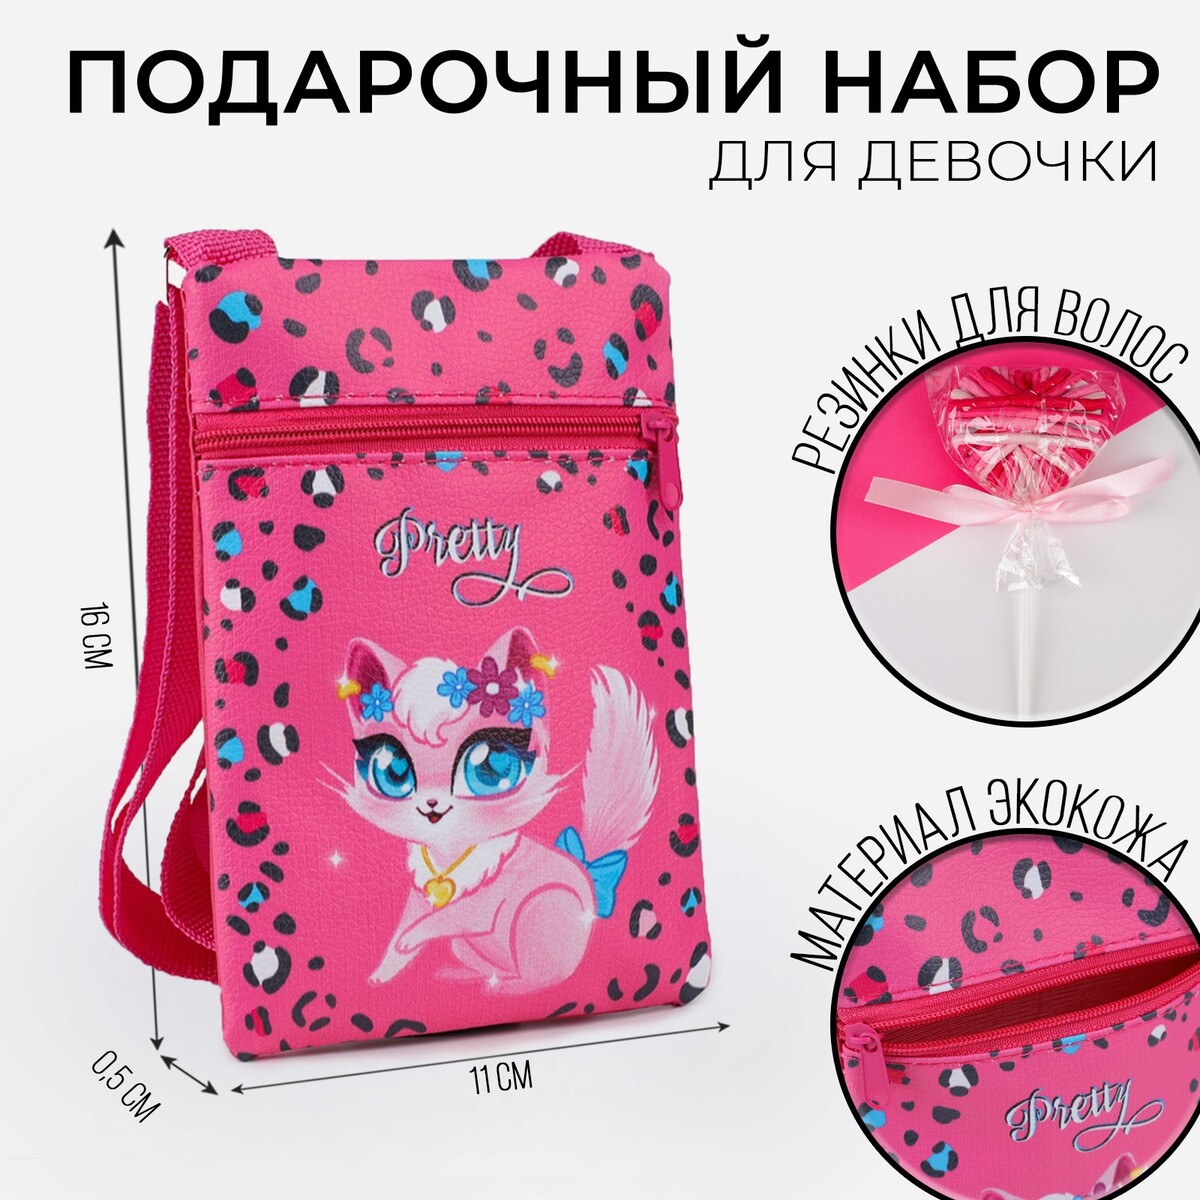 Набор для девочки маленькая кошечка: сумка и резинки для волос, цвет малиновый набор для девочки маленькая кошечка сумка и резинки для волос малиновый